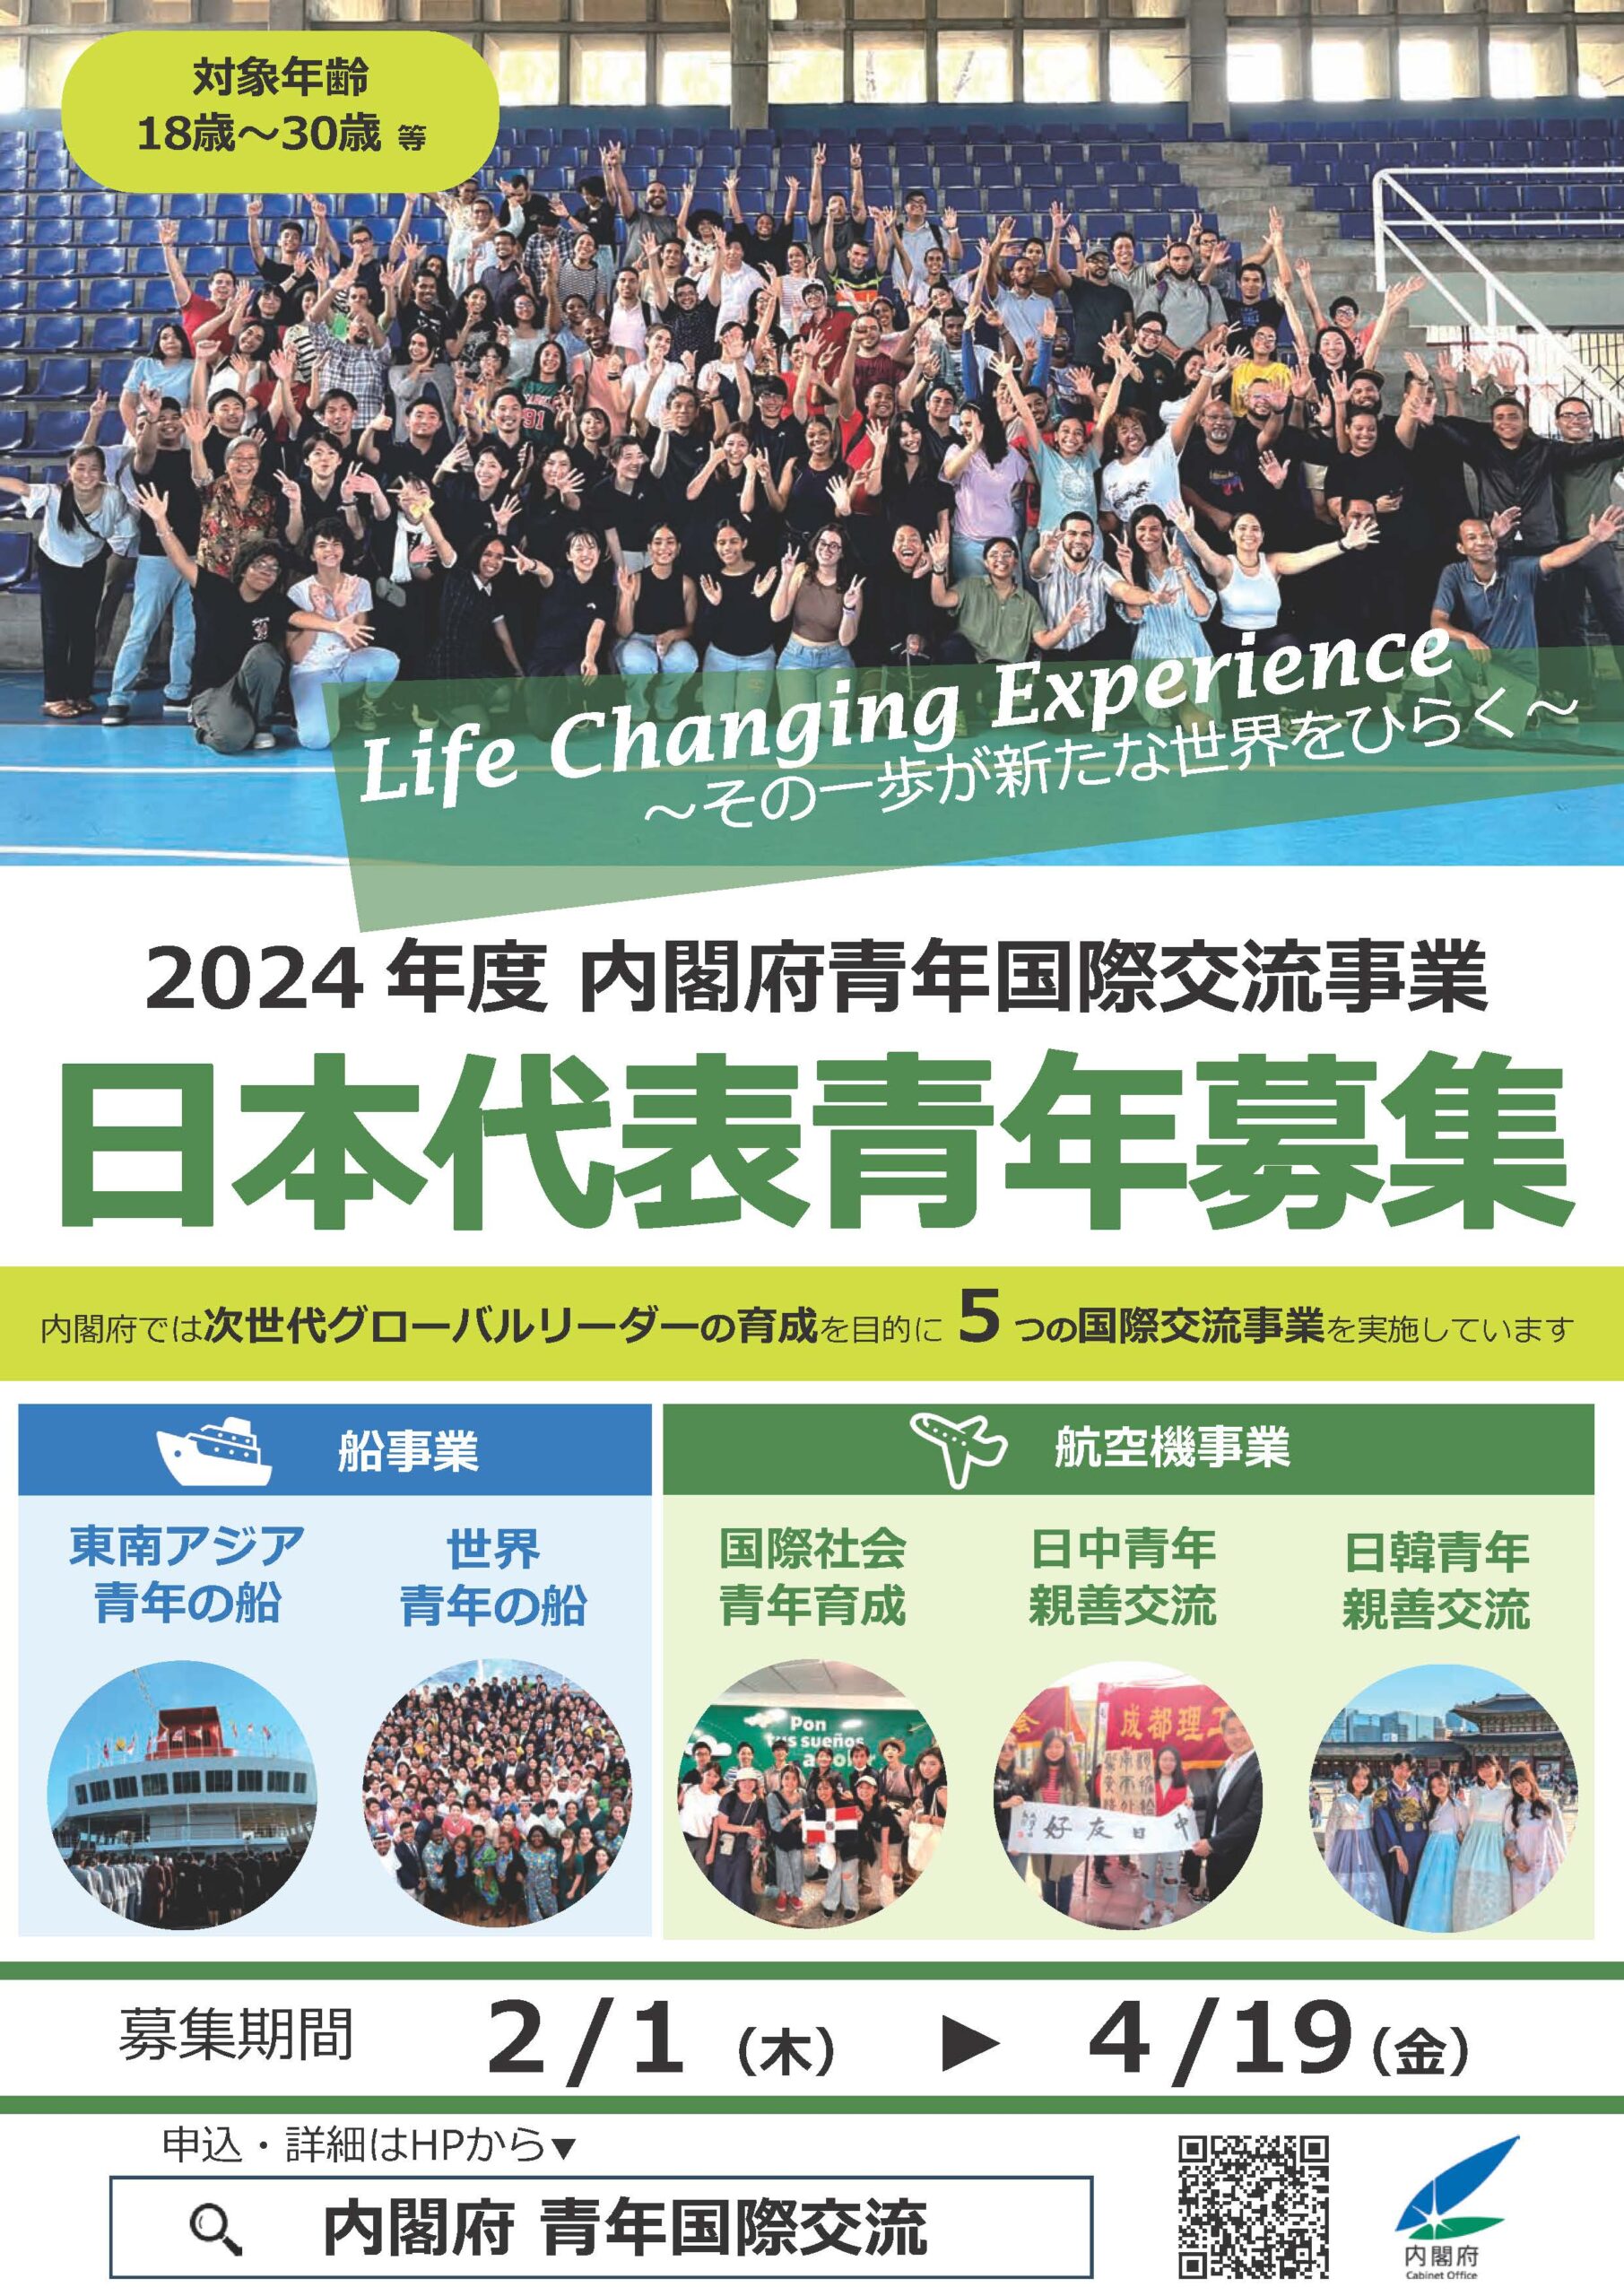 2024年度 内閣府青年国際交流事業 日本代表青年募集について